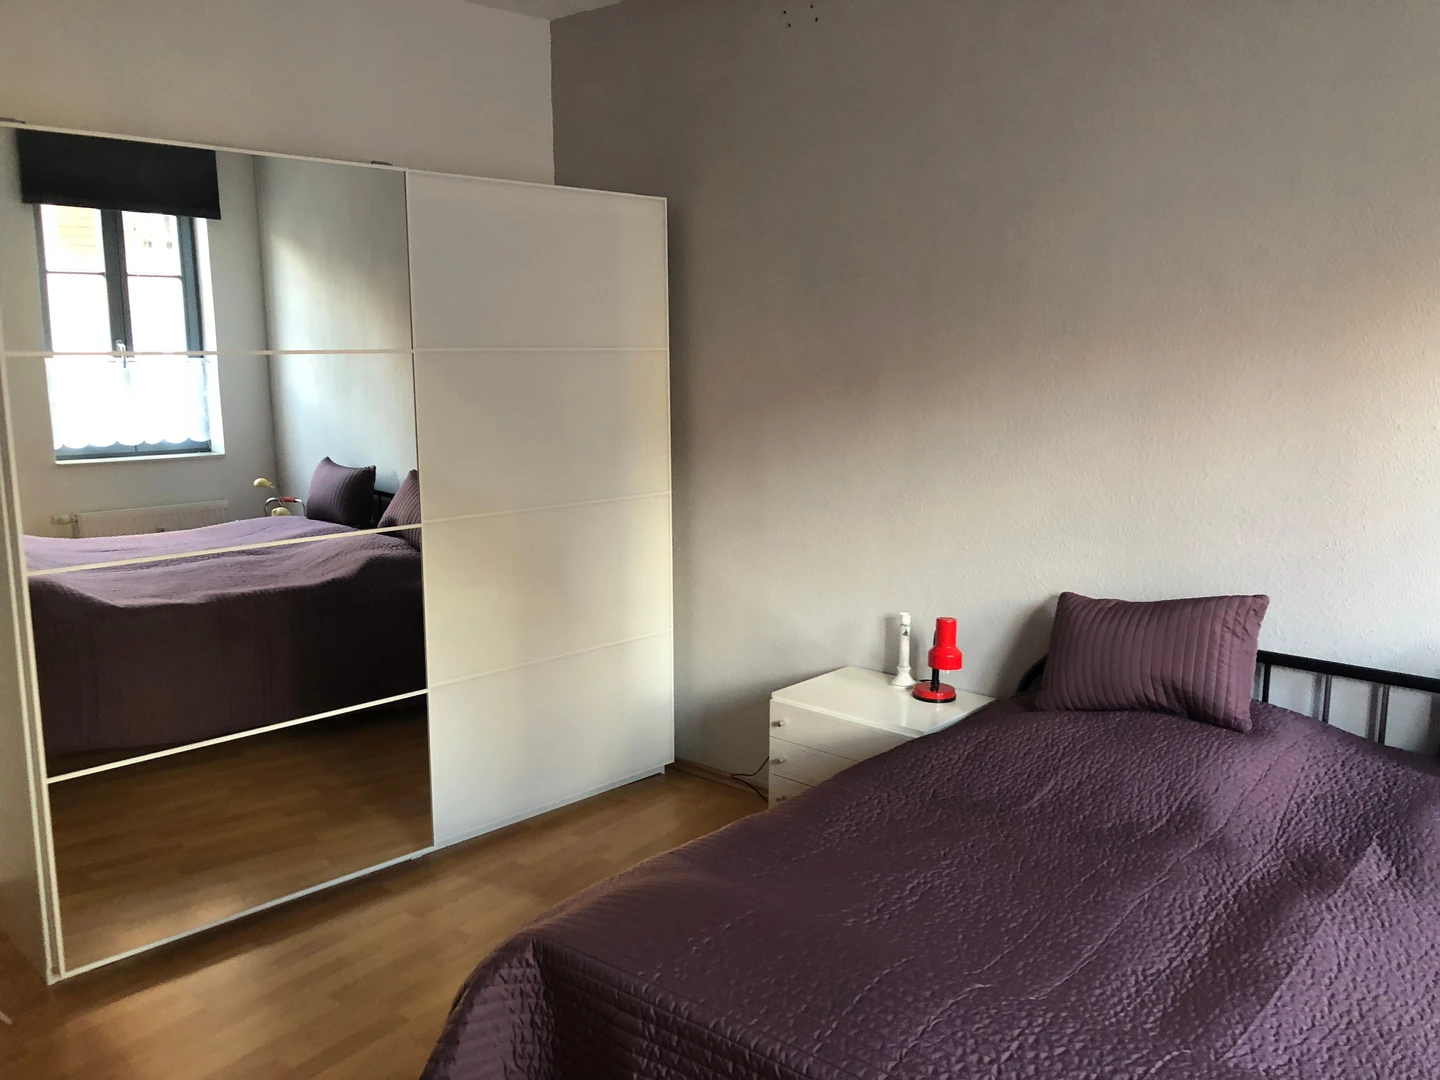 Alquiler de habitación en piso compartido en Erfurt